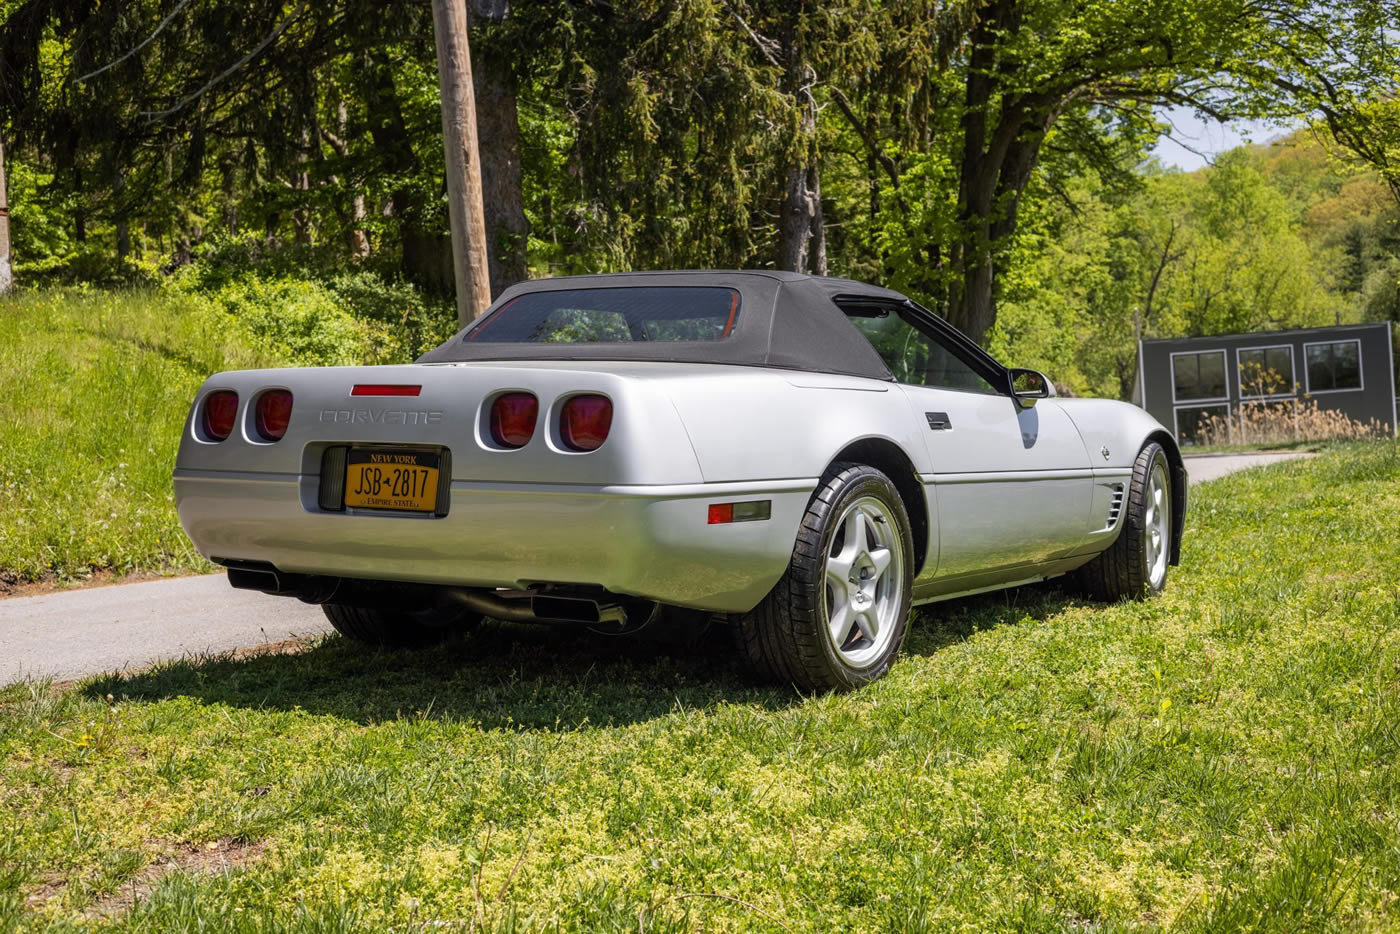 1996 Corvette Collector Edition Convertible